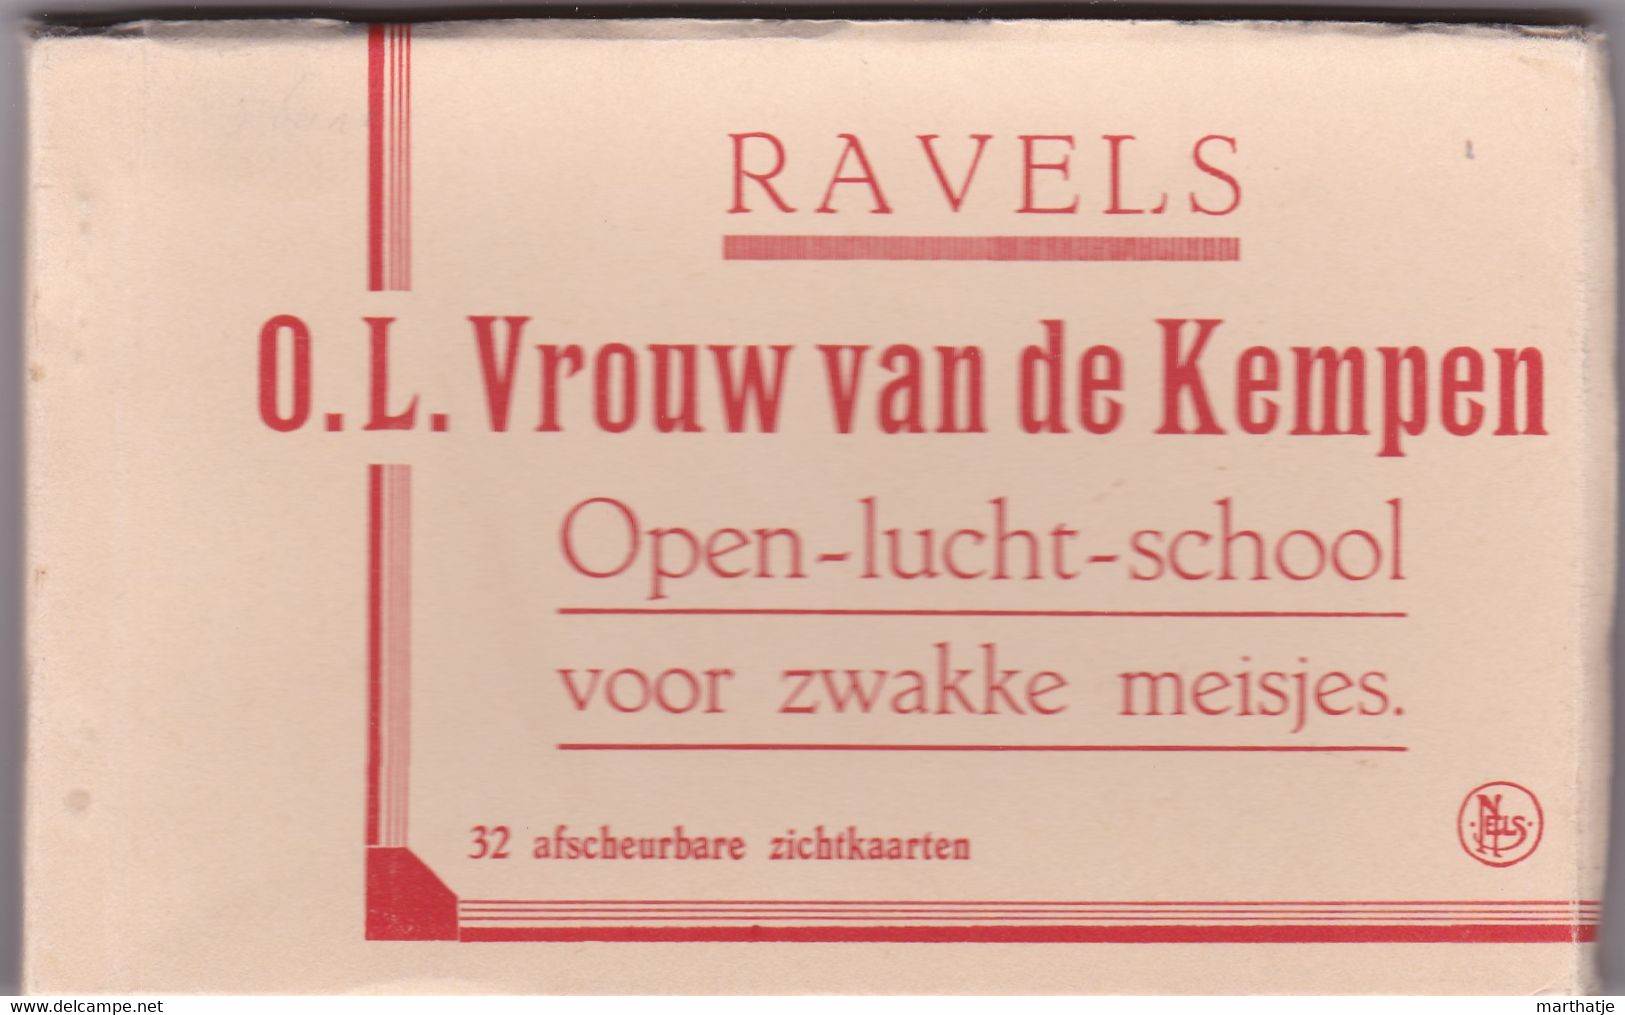 Carnet-Mapje Van Ravels-O.L.Vrouw Van De Kempe -Open-lucht-school Voor Zwakke Meisjes-32 Afscheurbare Zichtkaarten - Ravels